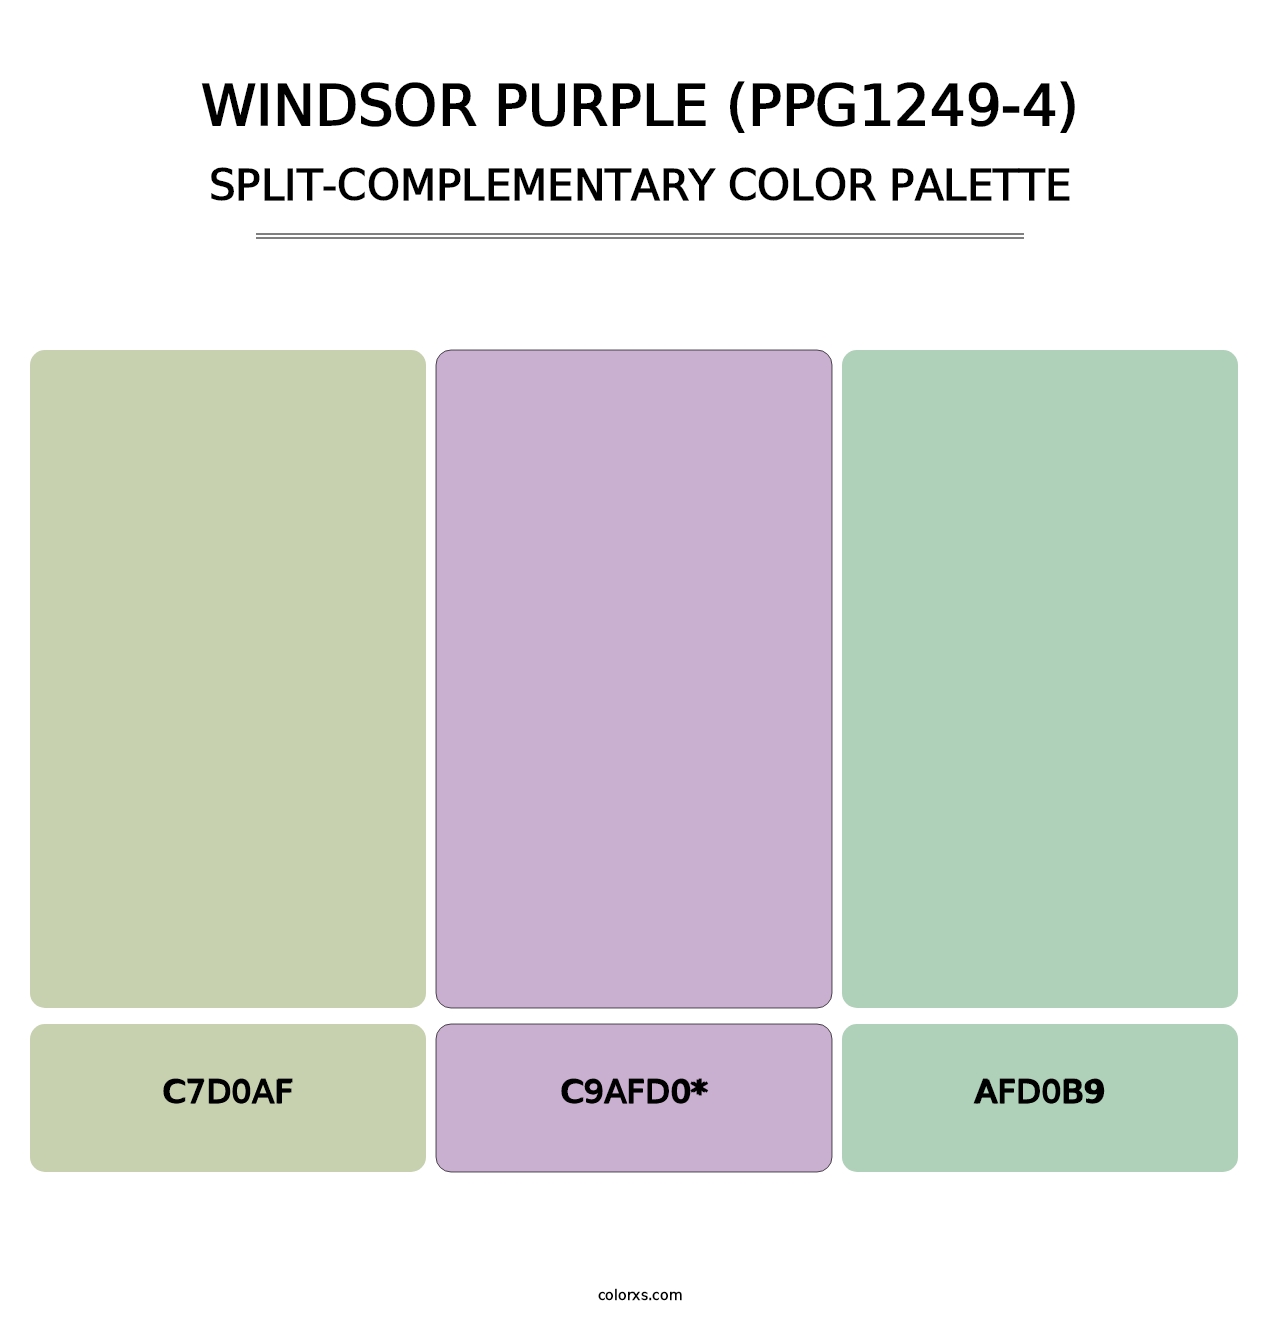 Windsor Purple (PPG1249-4) - Split-Complementary Color Palette